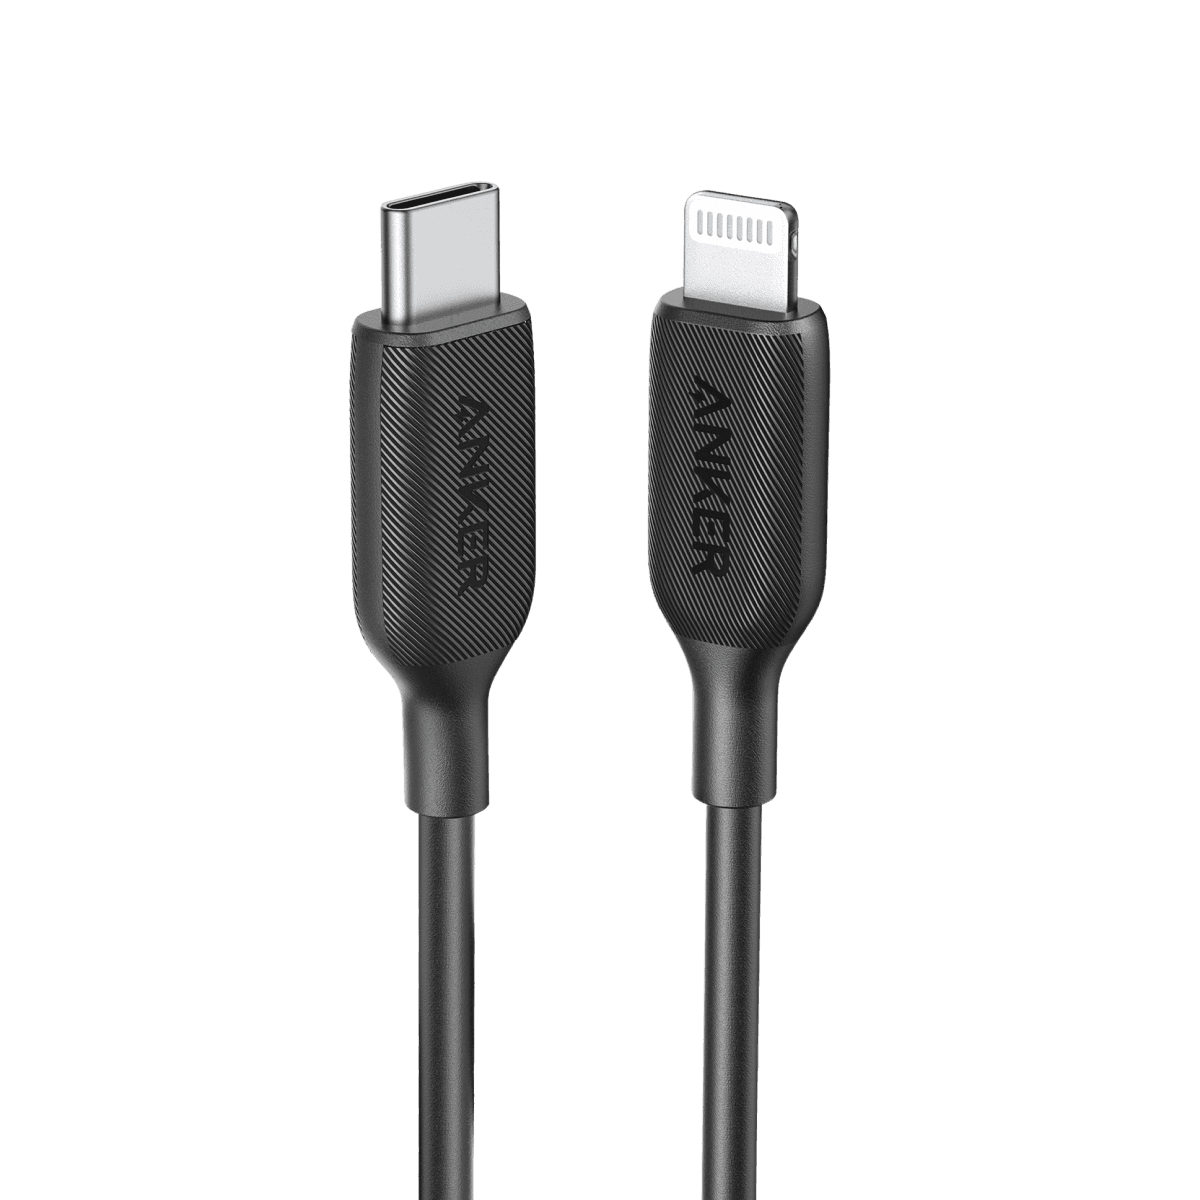 Anker <b>541</b> USB-C to Lightning Cable (1ft/ 3ft/ 6ft)